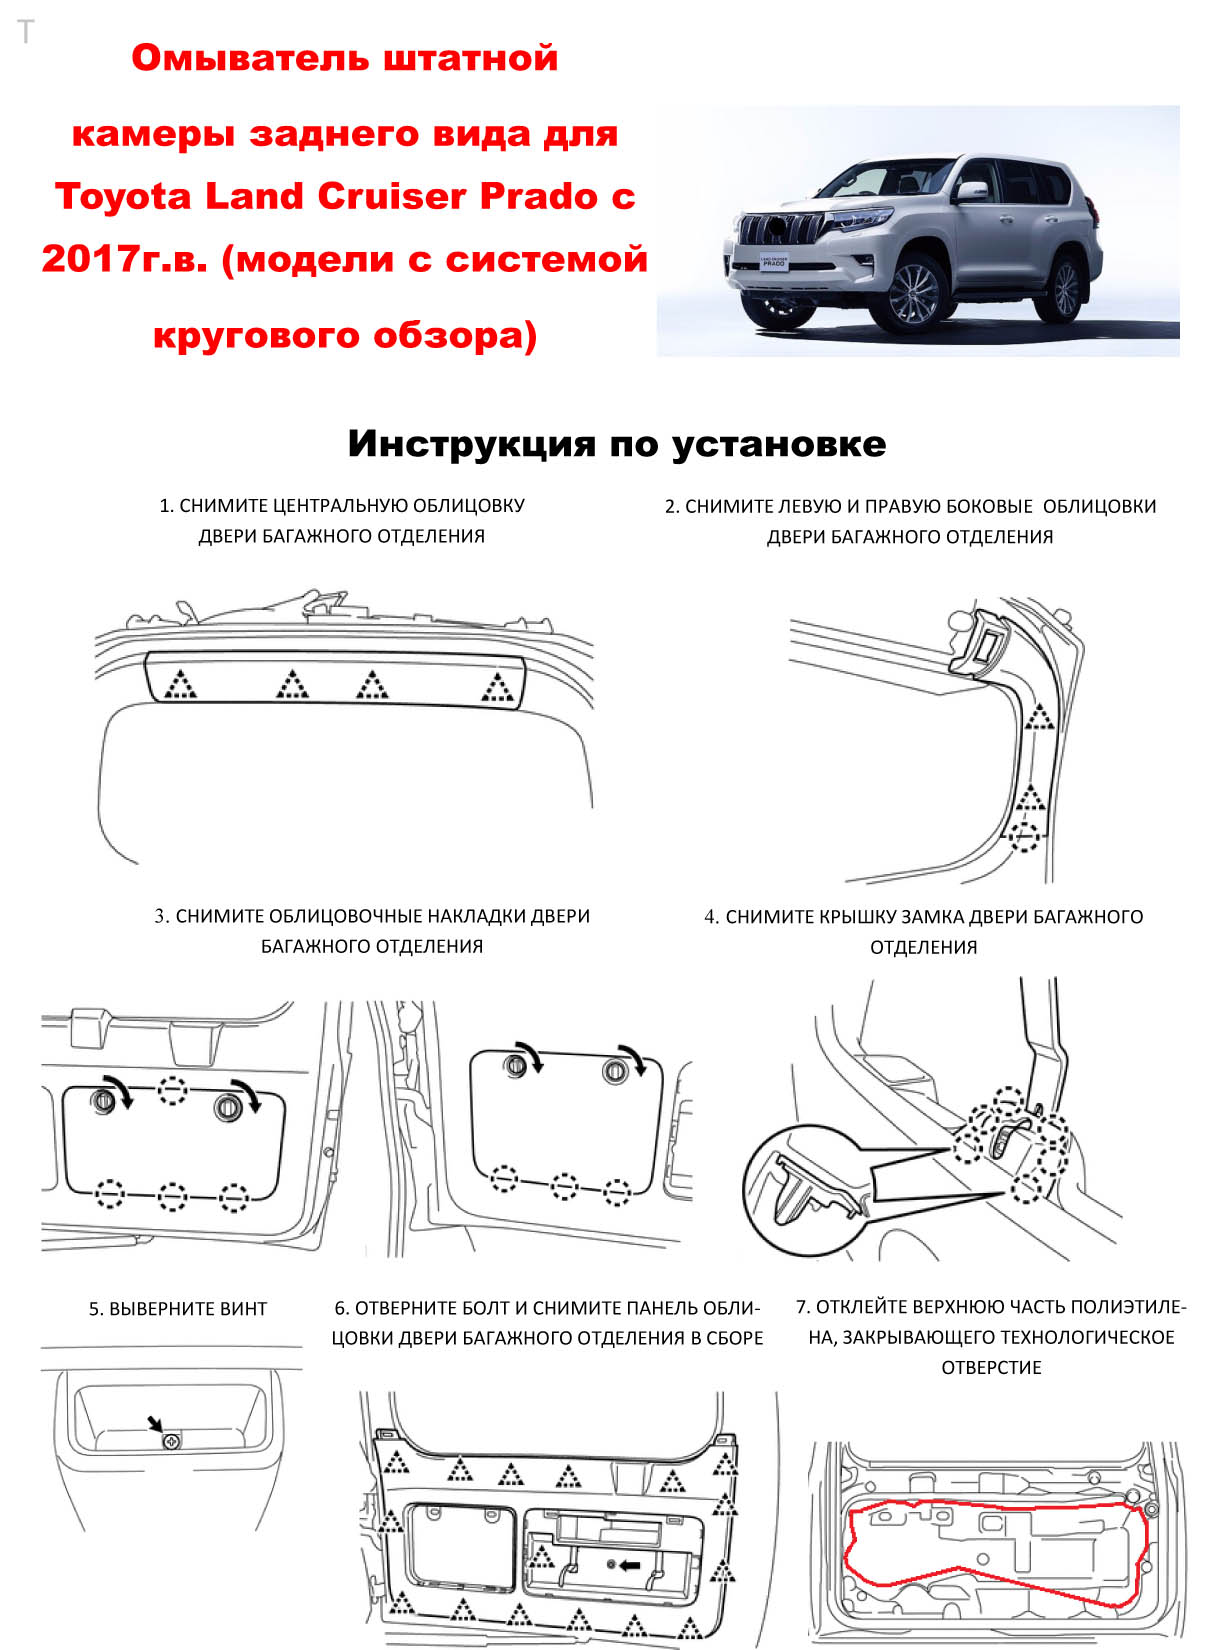 Инструкция по установке омывателя камеры заднего вида для Toyota Land Cruiser Prado 150